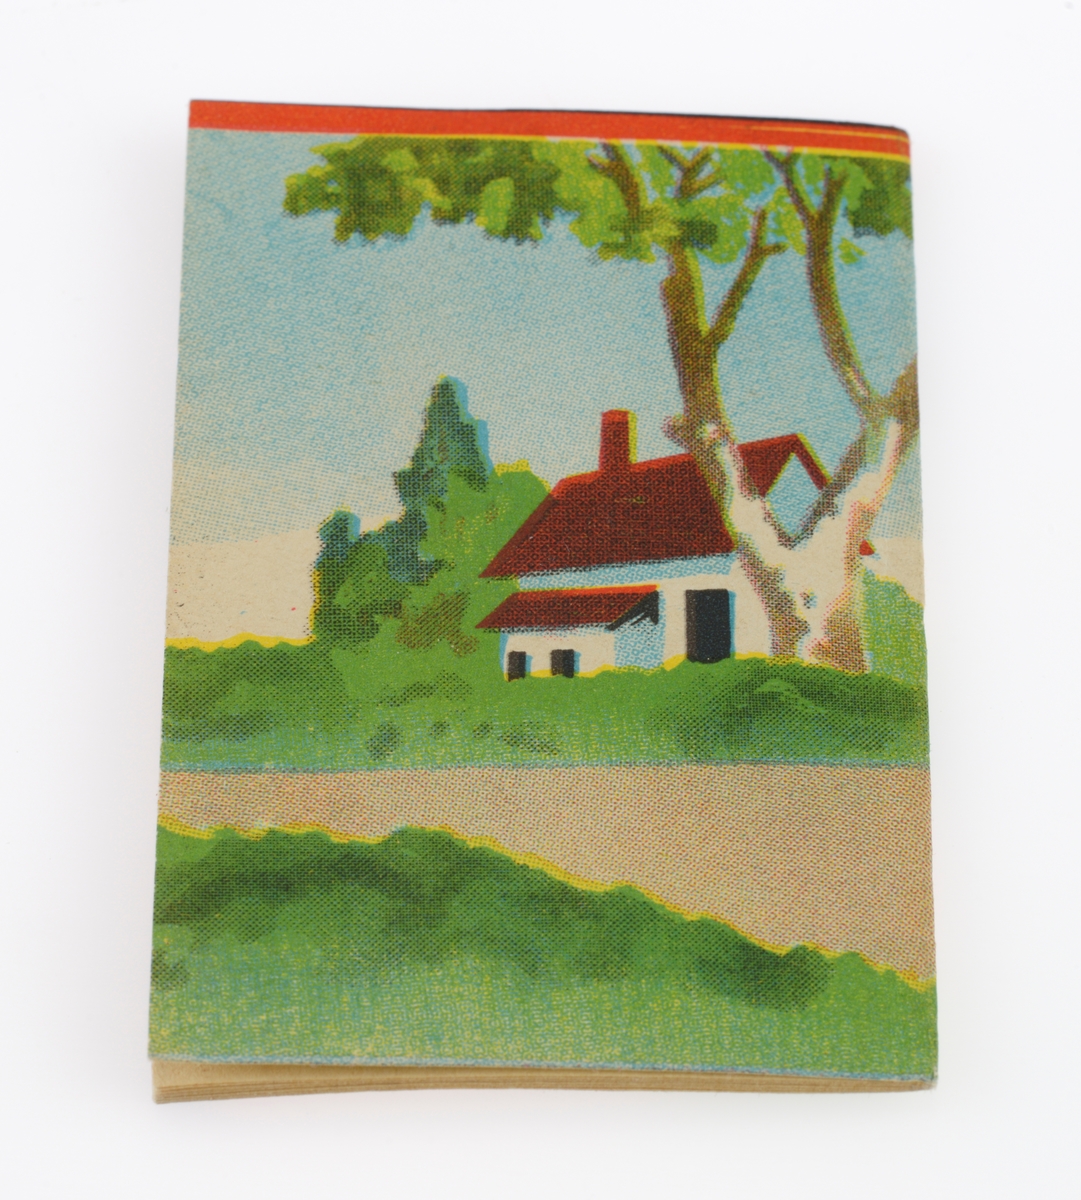 En liten kladdebok/skrivebok det ikke er skrevet noe i. Boken er innbundet ved at det er sydd i ryggen. Arkene i boken er gulnet. For- og baksiden utgjør et bilde av en gutt som tar bilde av en sittende hund. I bakgrunnen er det et hus med hage, hekk og trær.